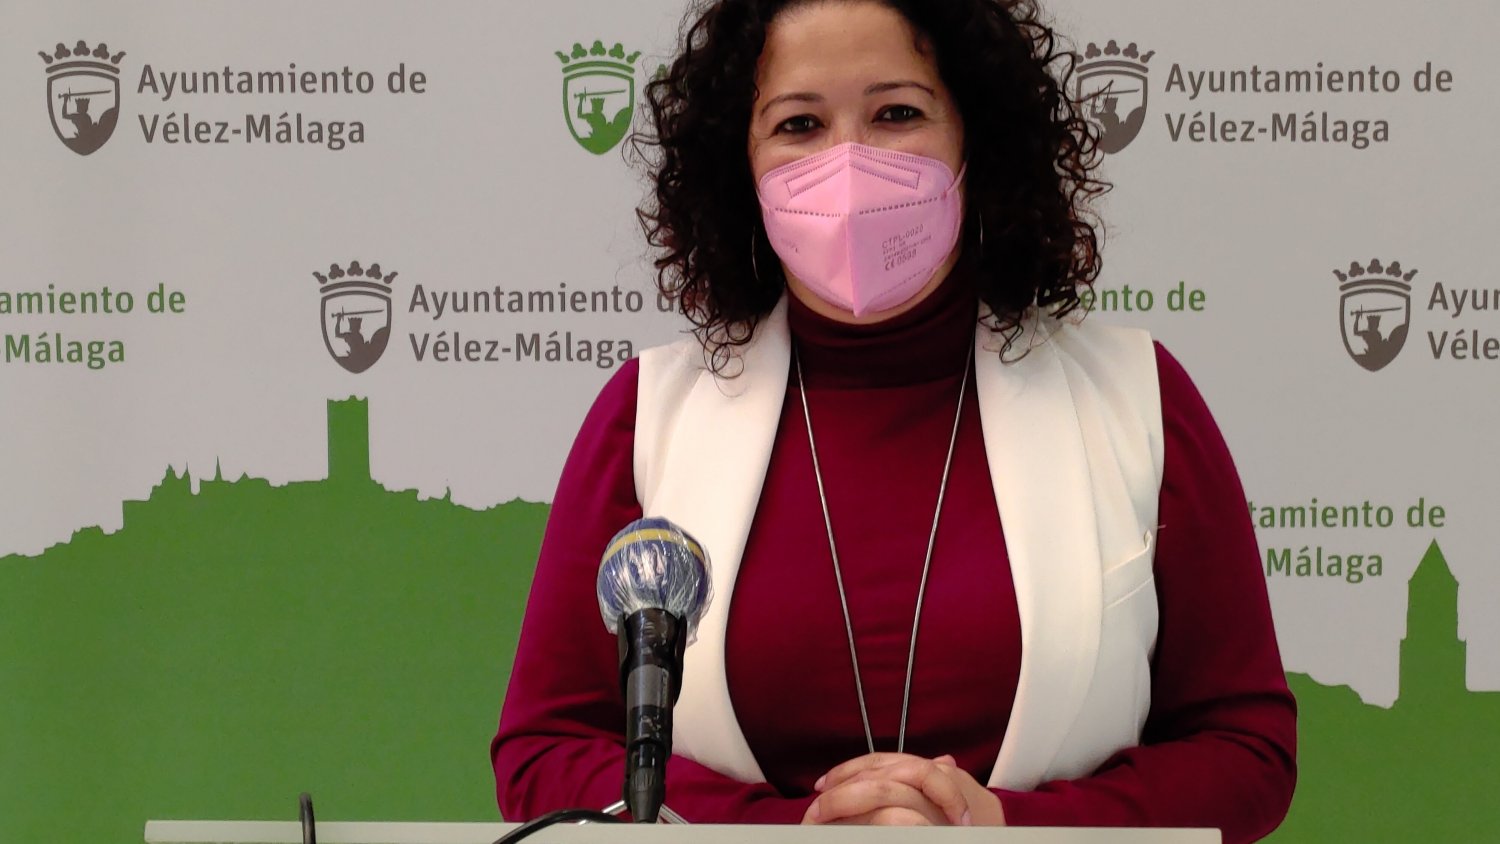 Vélez-Málaga ultima los diferentes instrumentos para fomentar la participación ciudadana